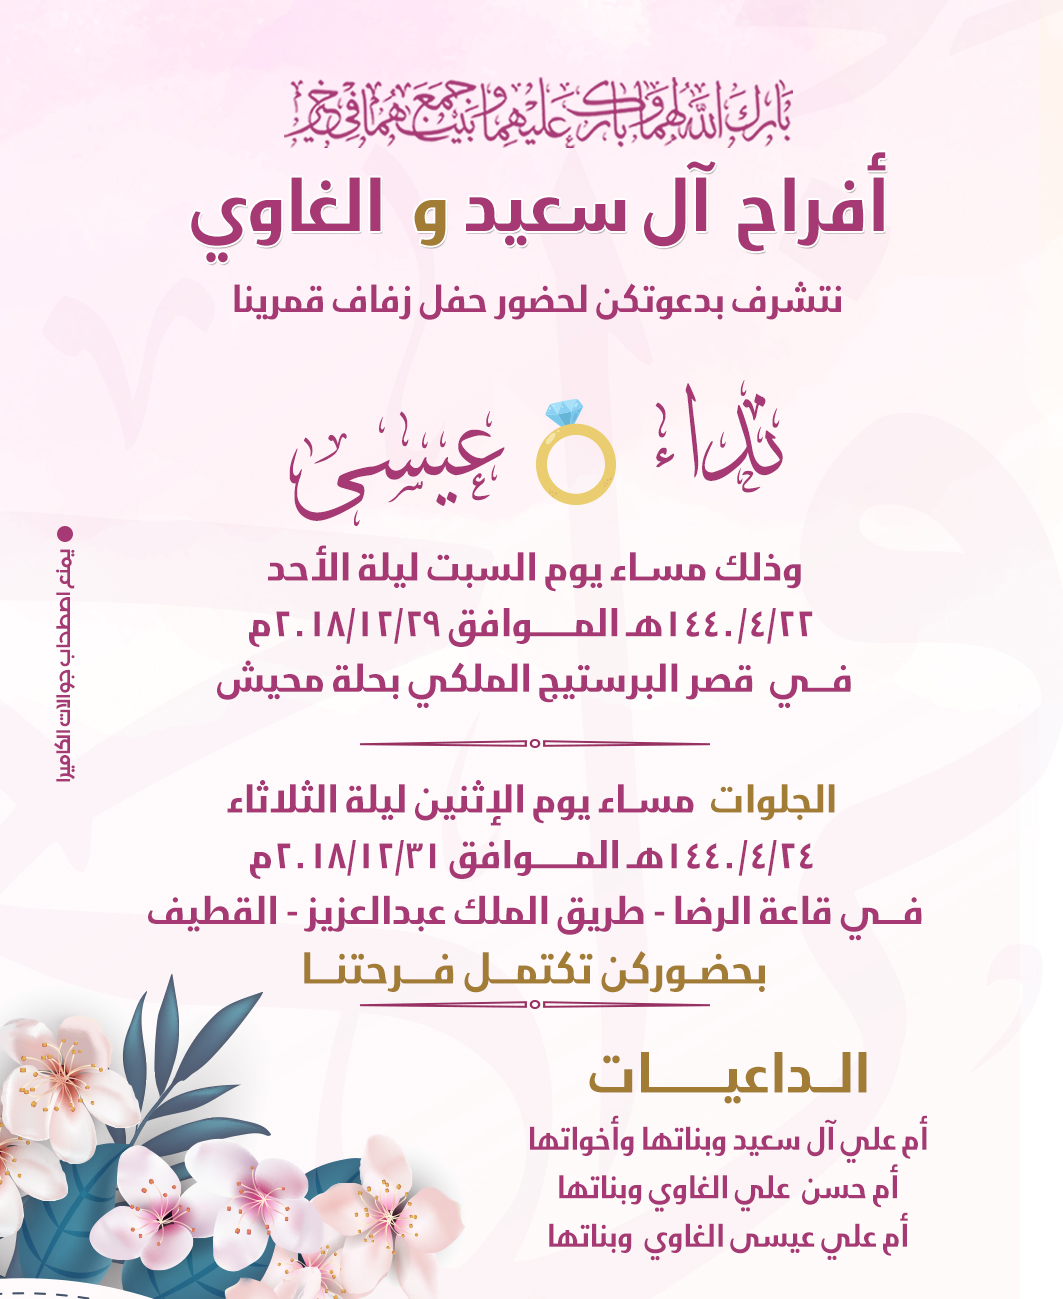 للنساء دعوة لحفل زواج عائلة الغاوي وال سعيد برودكاست أبارق